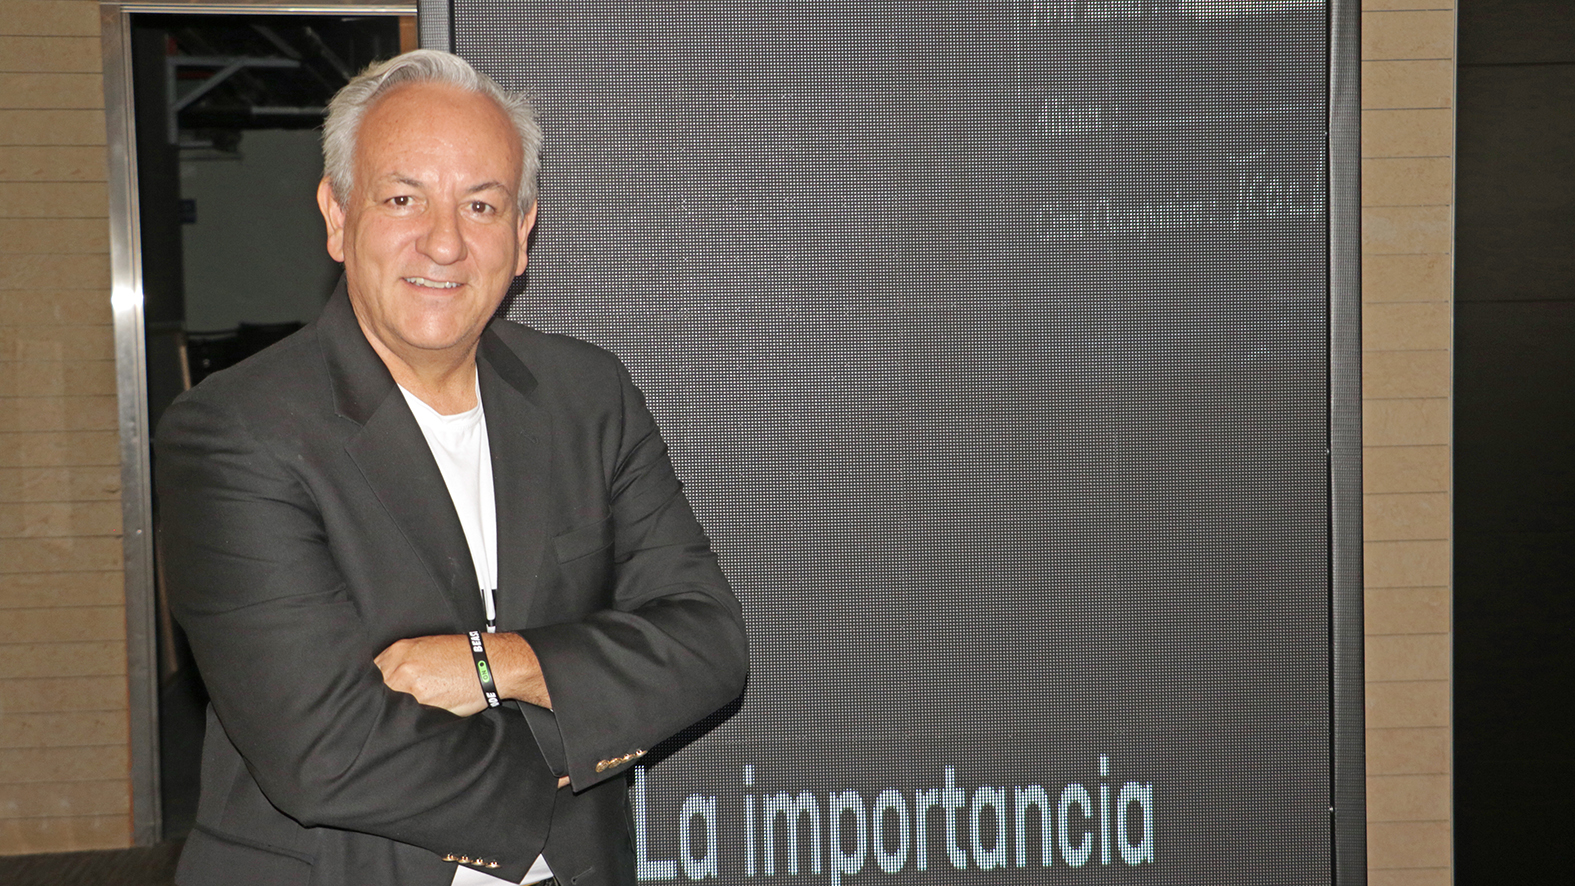  Roberto Ricossa, vicepresidente de Ventas de F5 para América Latina.